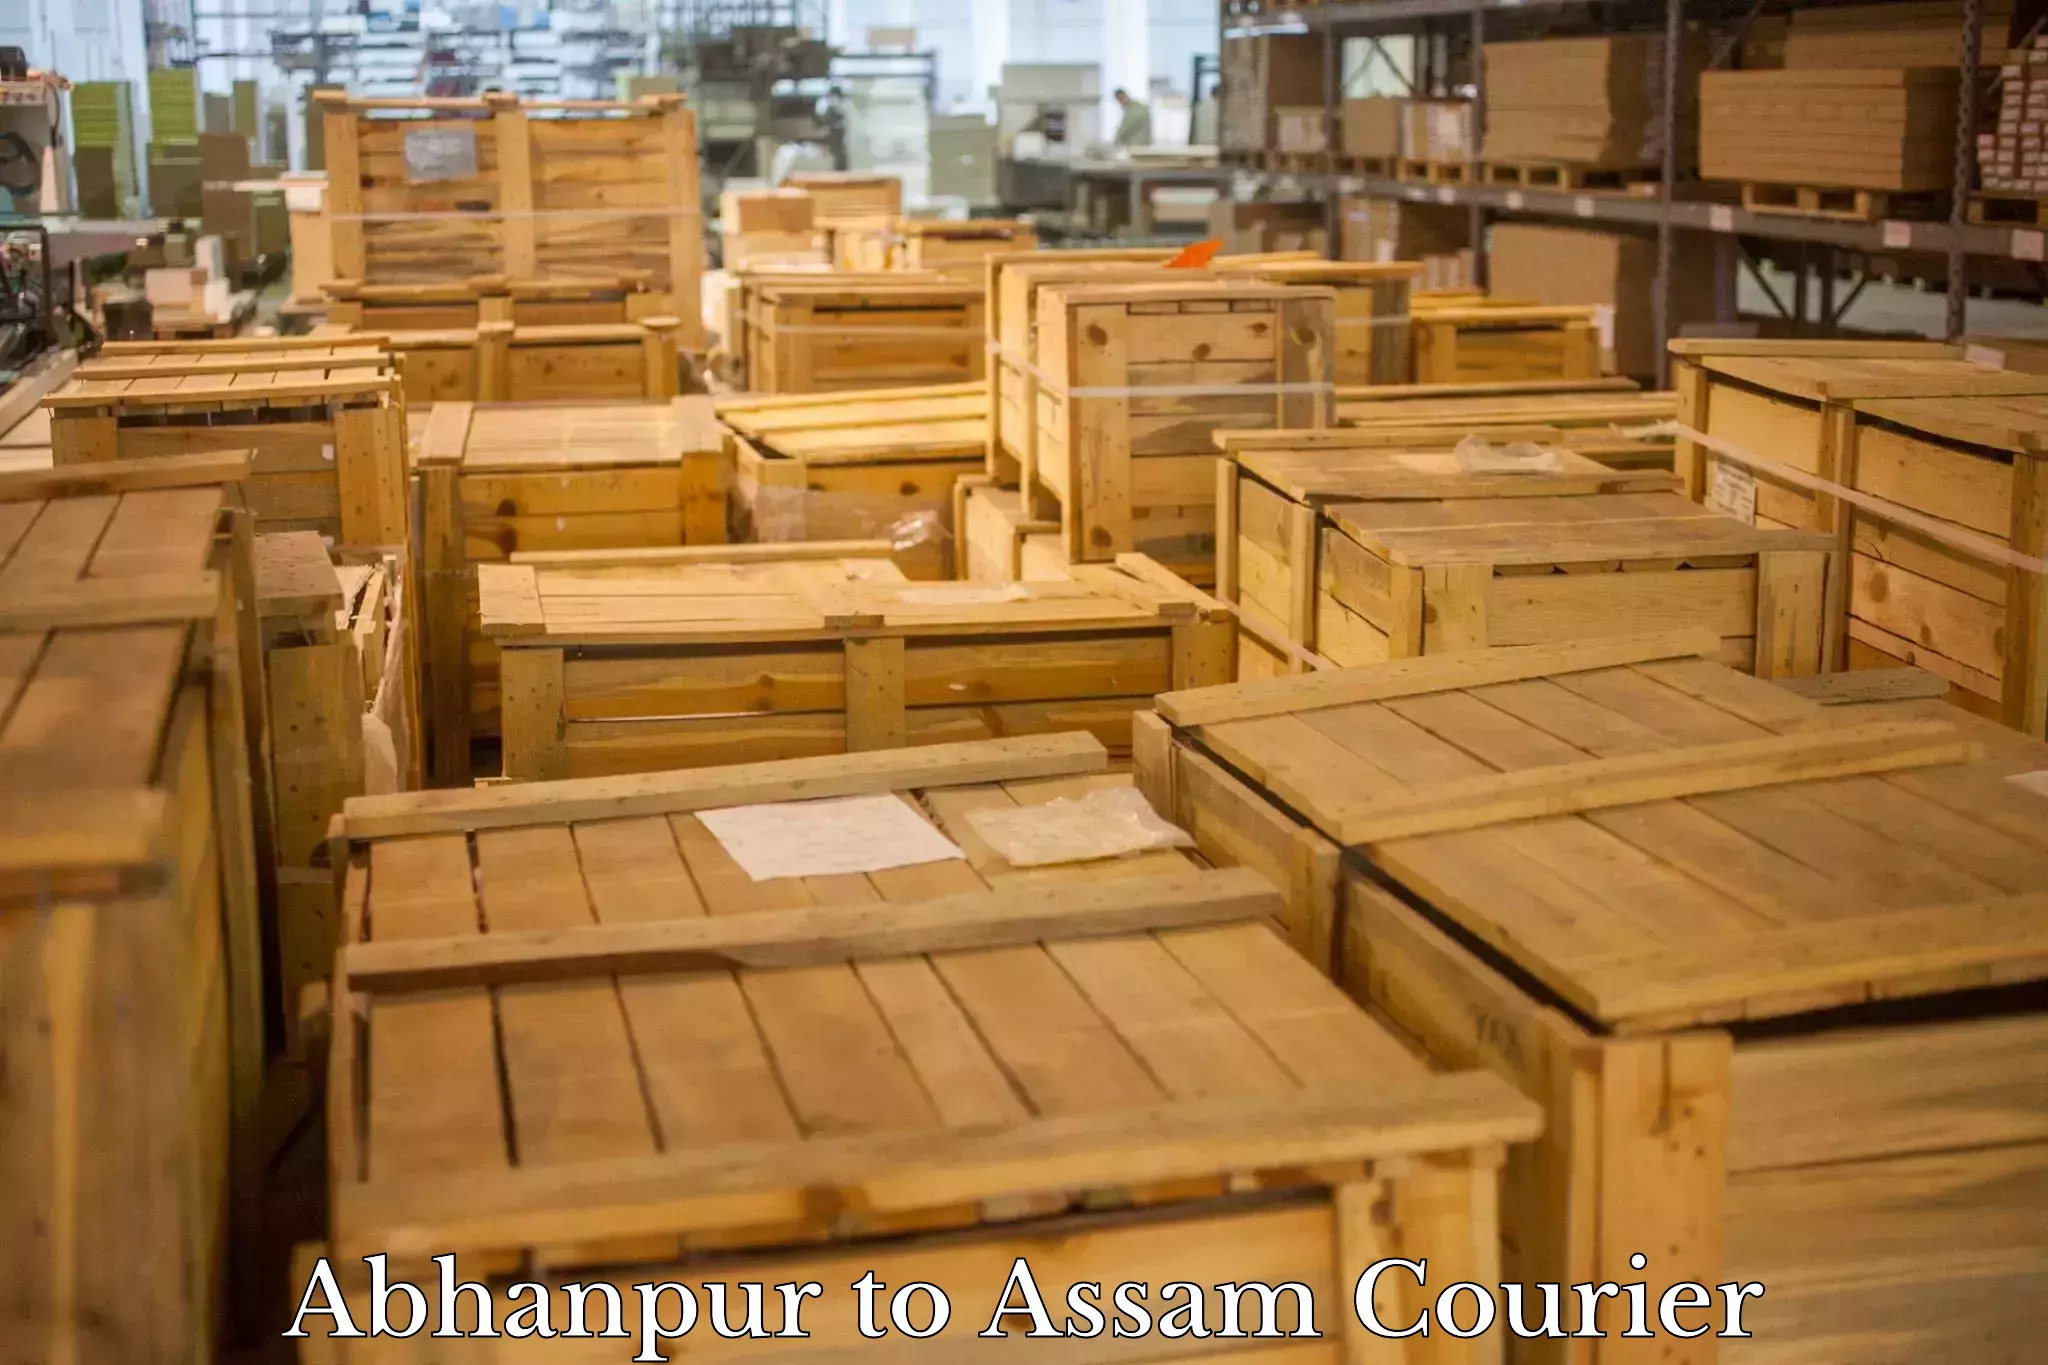 Regular parcel service Abhanpur to Assam